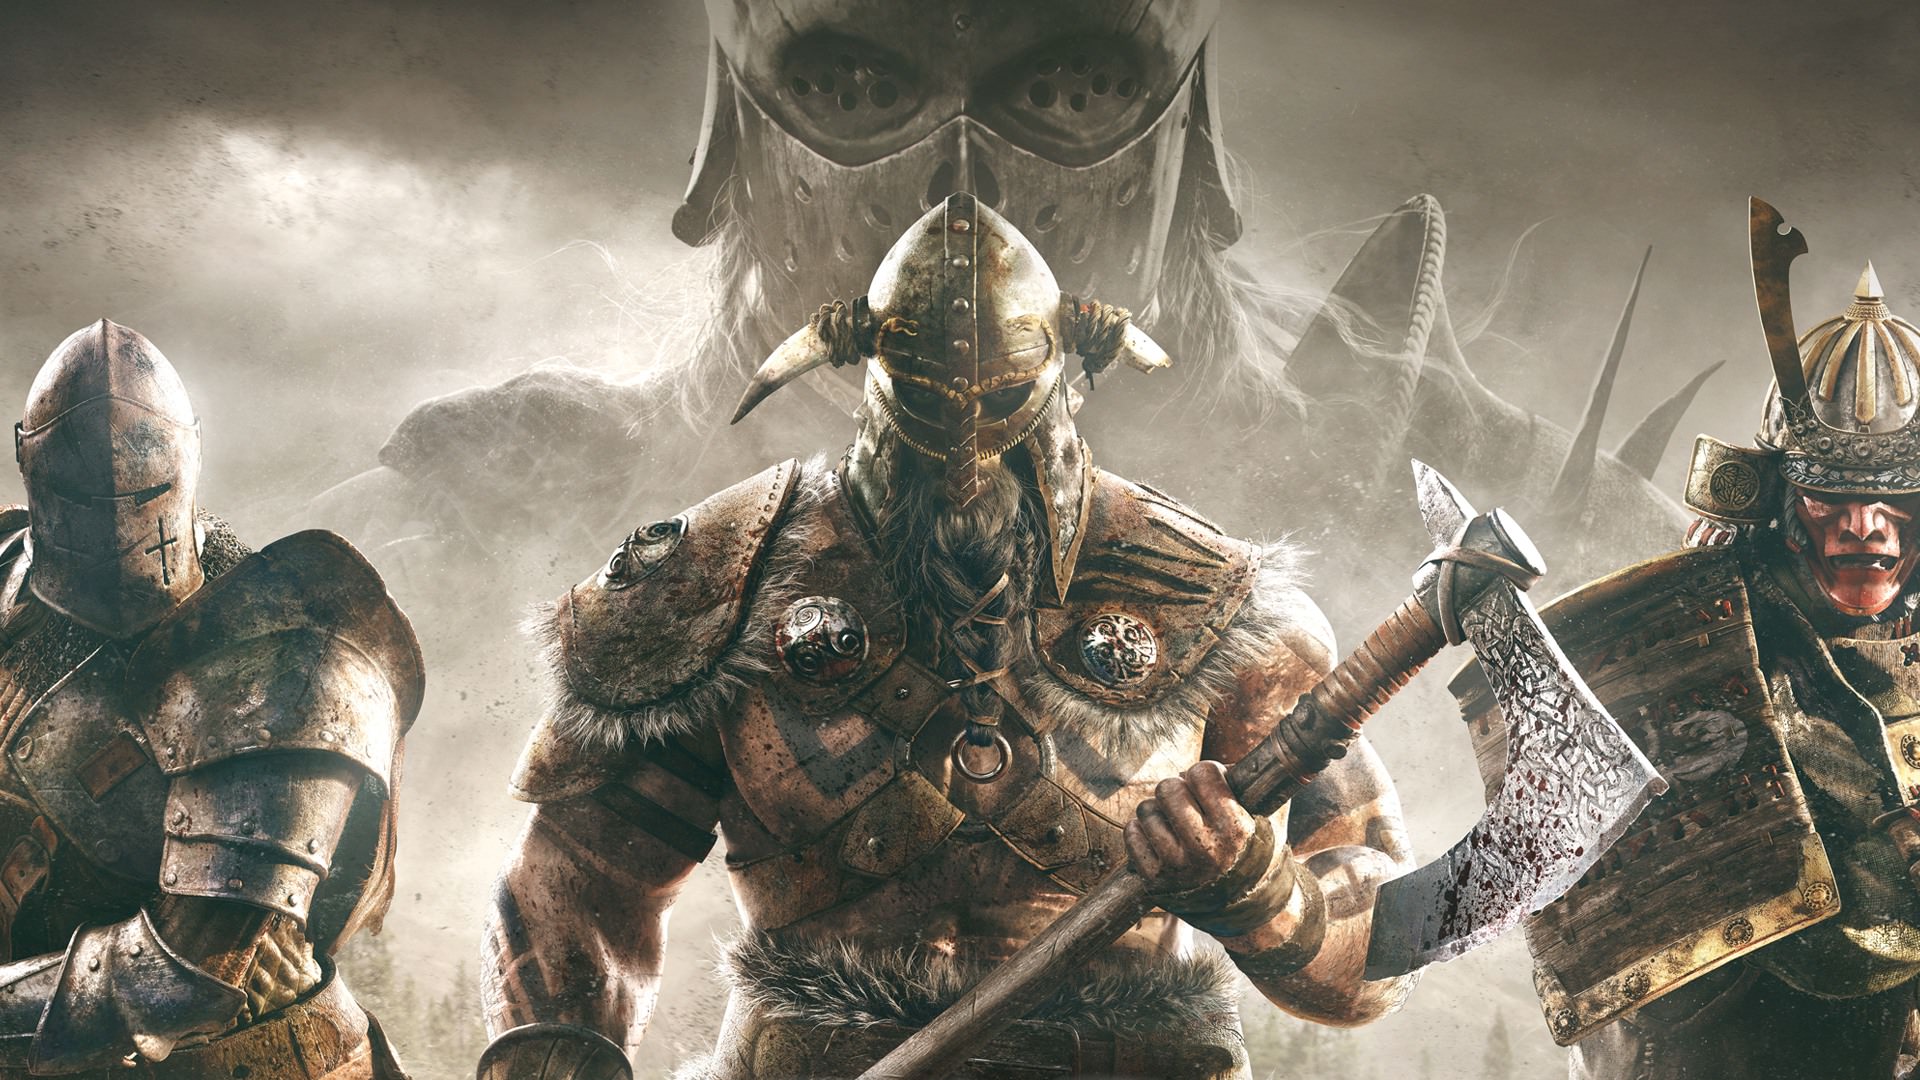 Ways Video Games Mess Up Vikings - Large beards